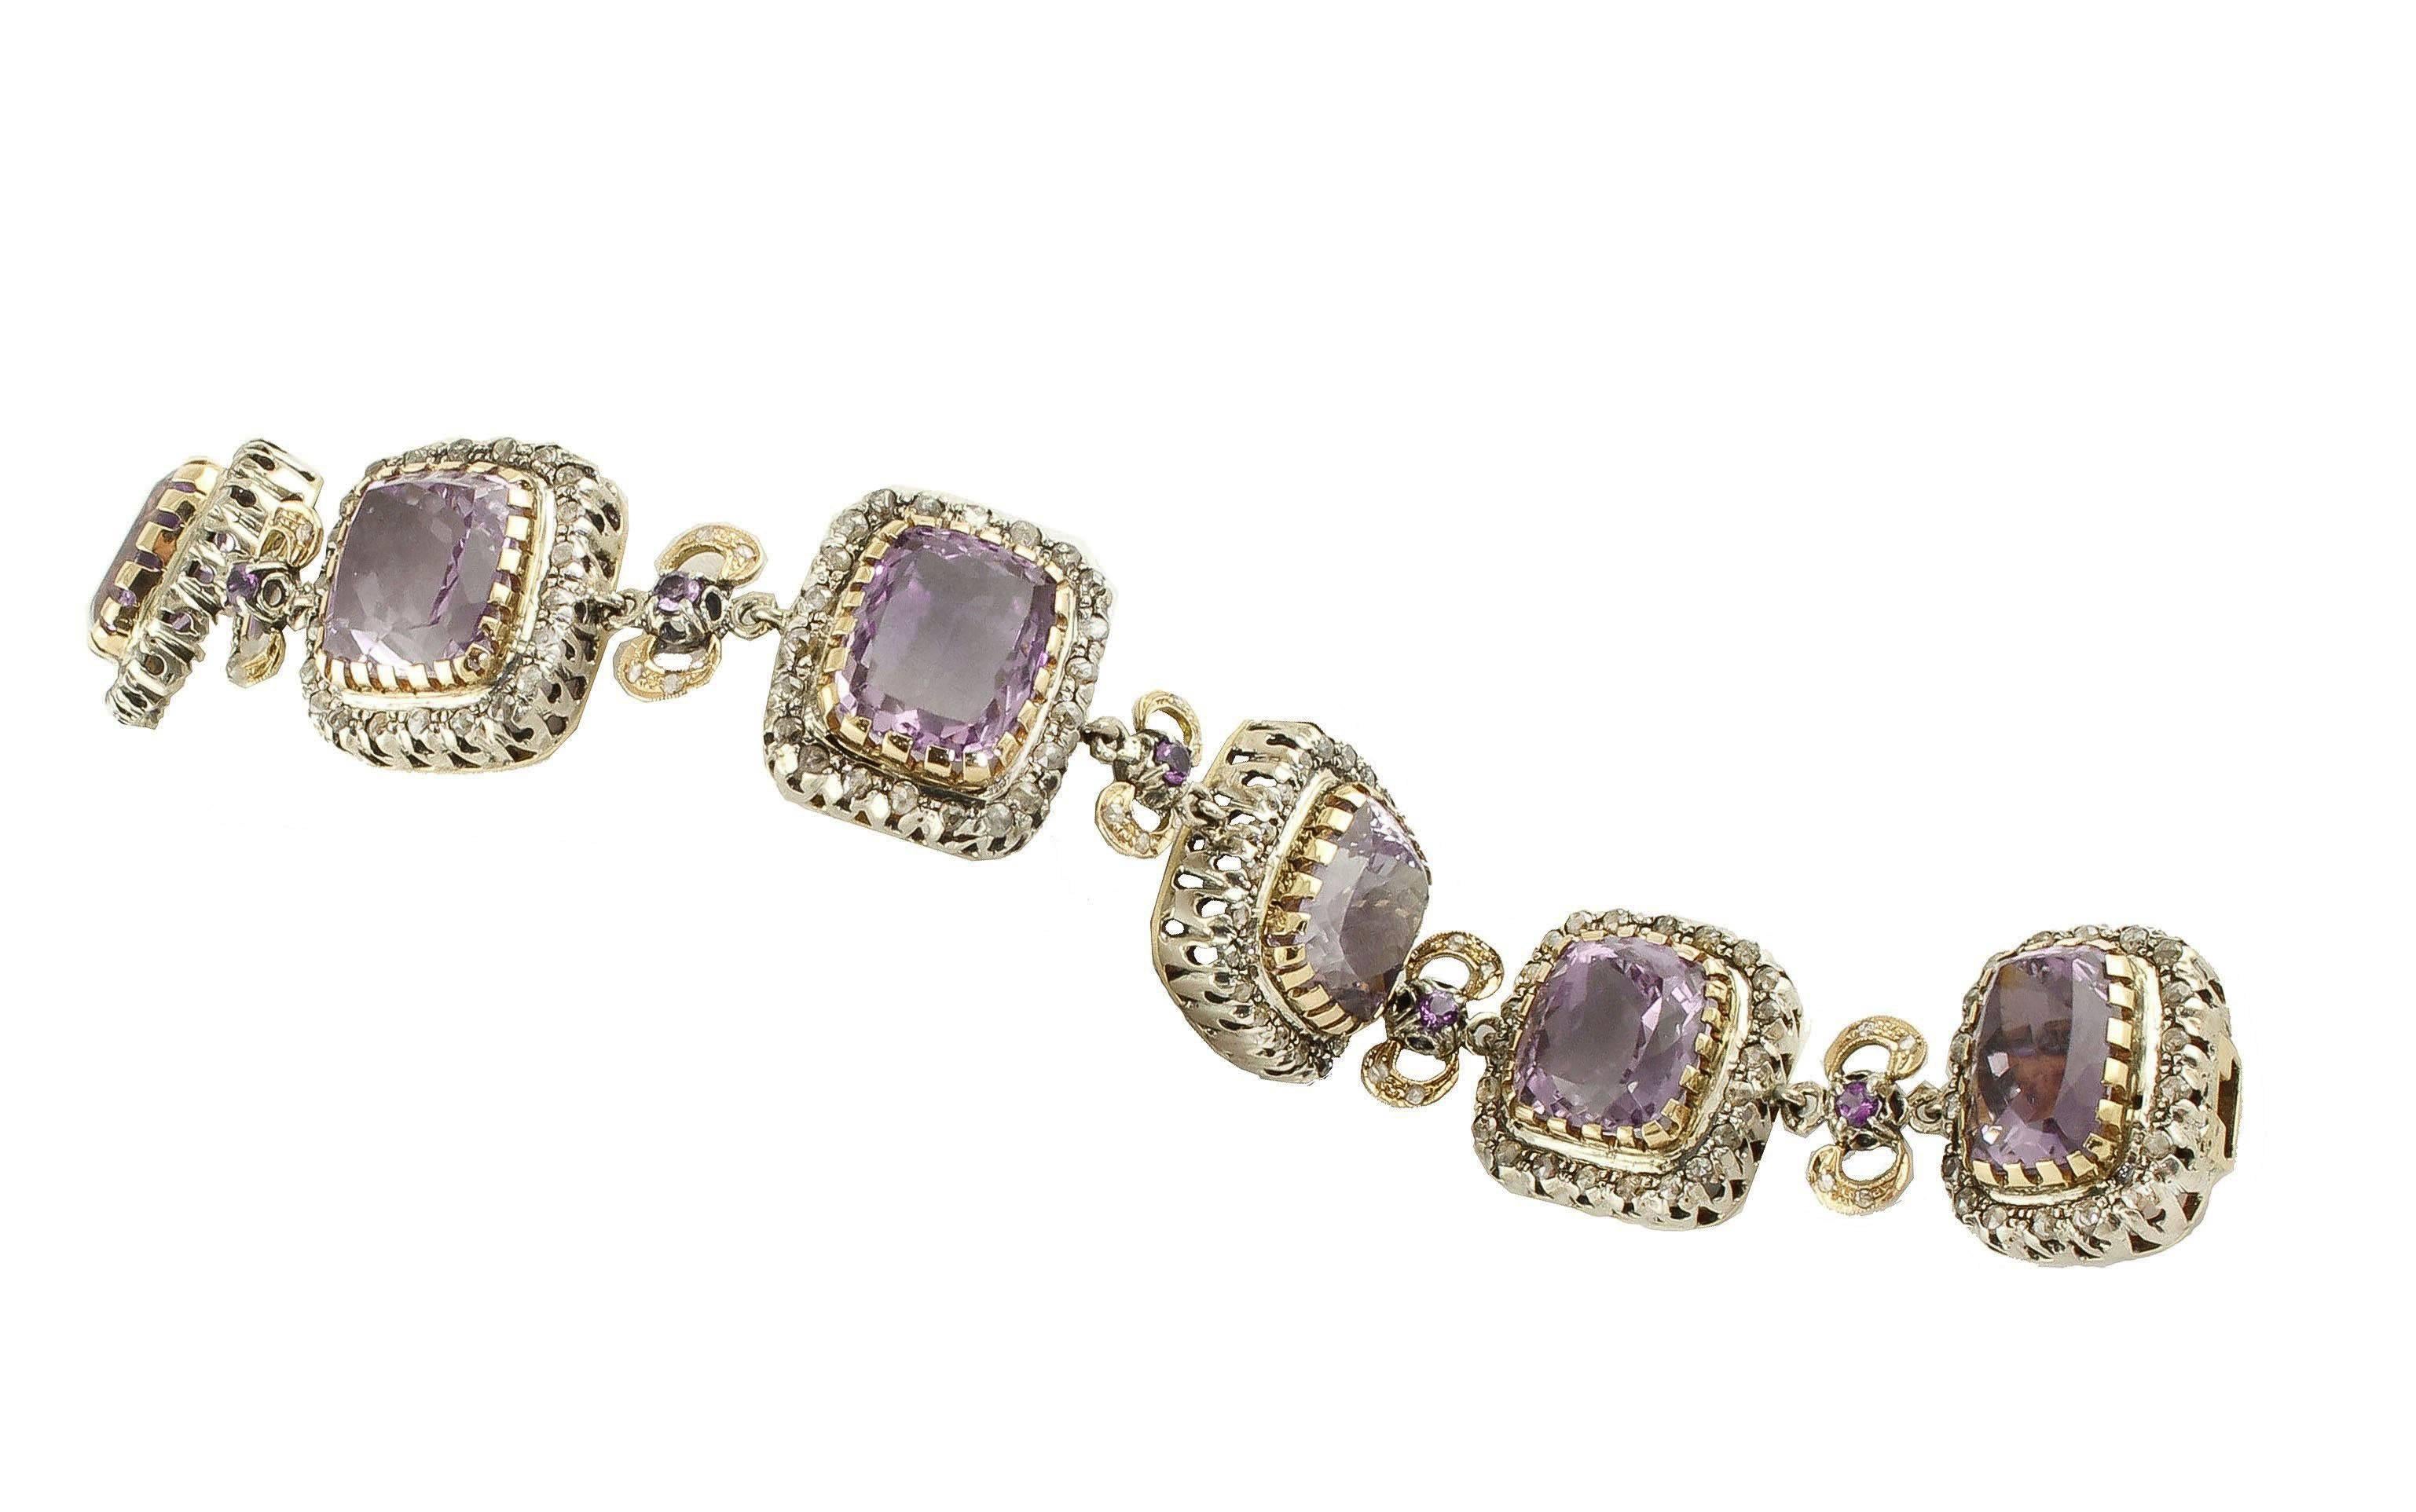 Rose Cut Amethysts, Diamonds, 14 Karat Rose Gold and Silver Link Bracelet For Sale